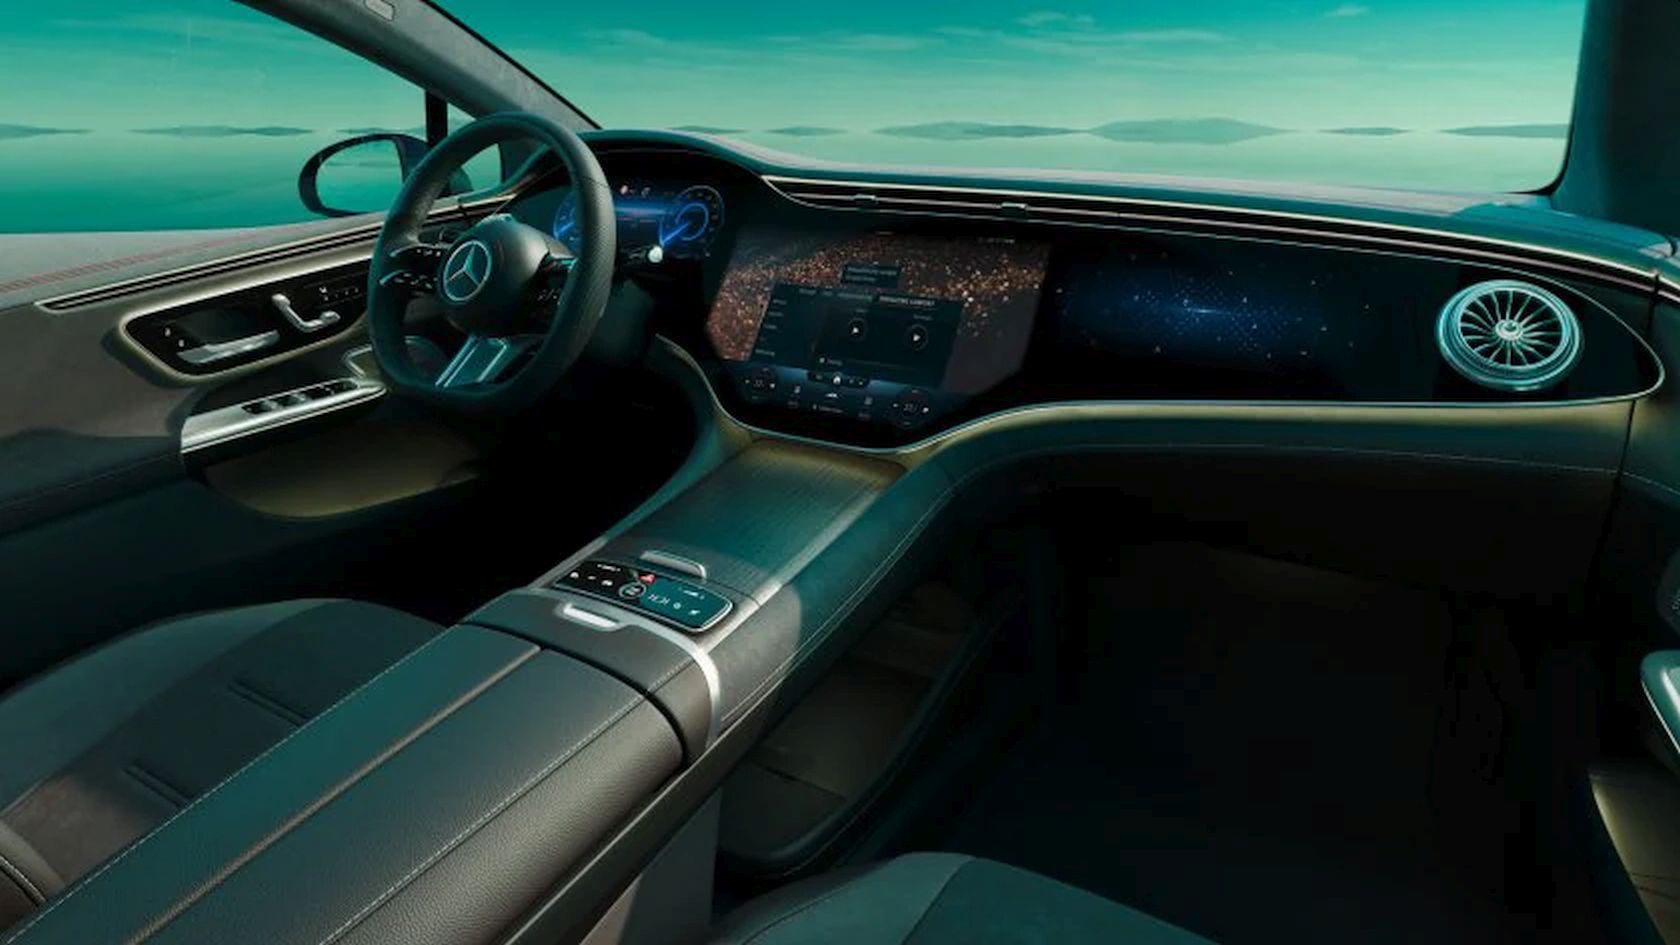 Az EQE limuzin MBUX Hyperscreen műszerfala a futurisztikus megjelenéssel teszi példátlanná az autót.